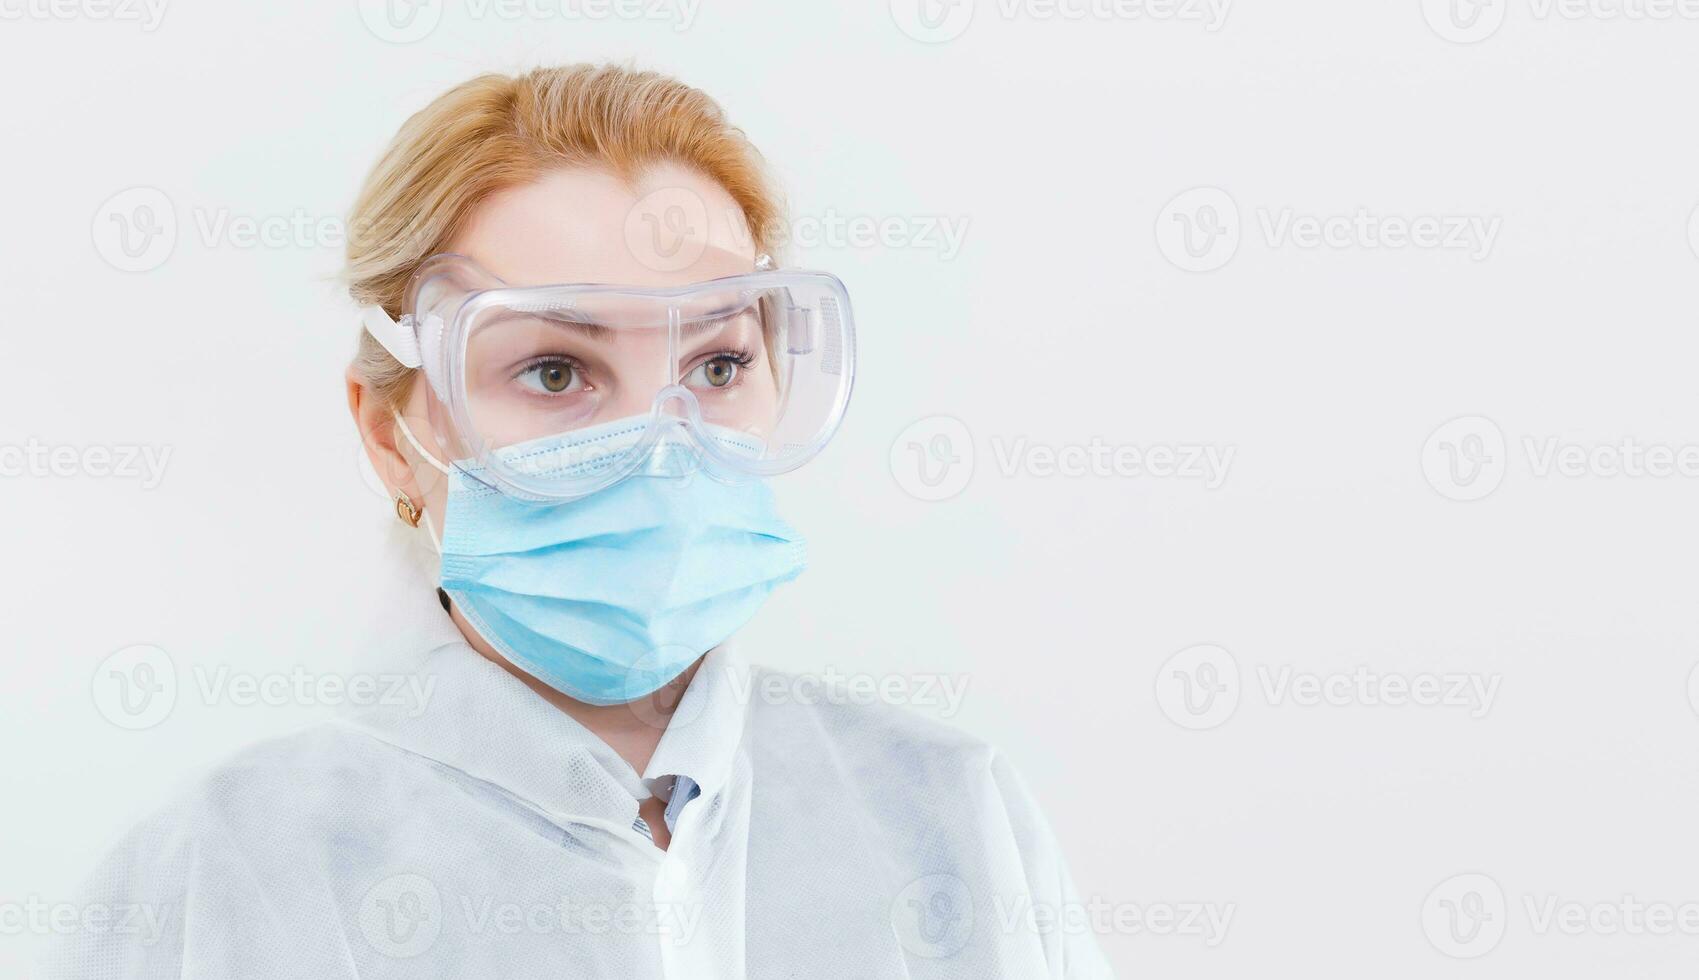 vrouw met een medisch masker voor bescherming opnieuw influenza. kopiëren ruimte voor uw tekst. foto